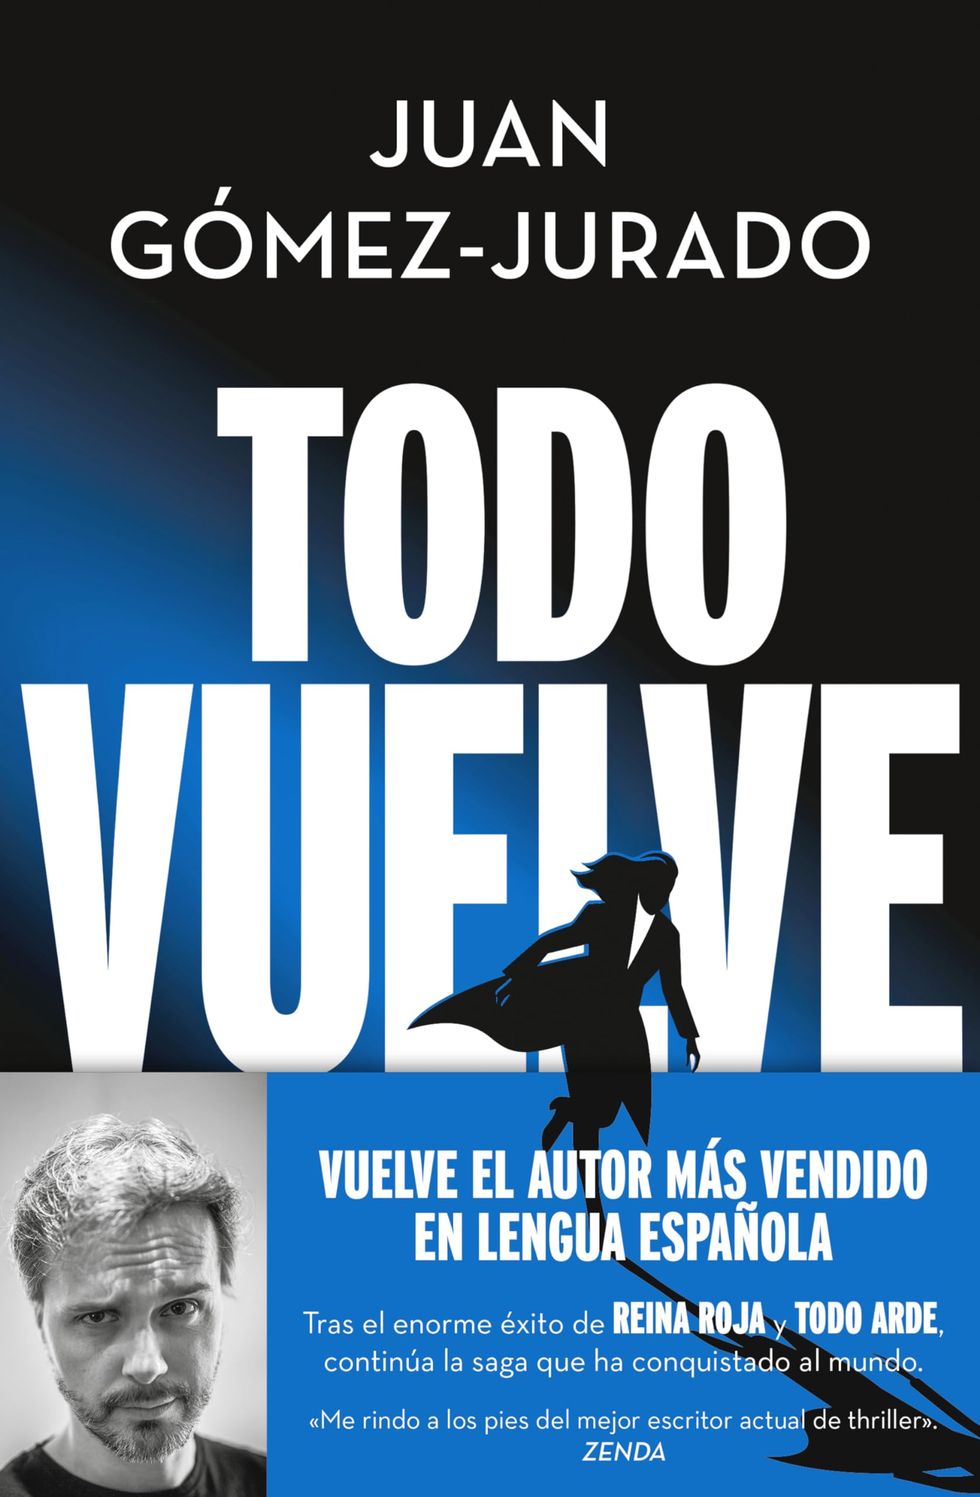 Los 5 mejores libros de Arturo Pérez-Reverte para regalar por Navidad a un  amante de las novelas